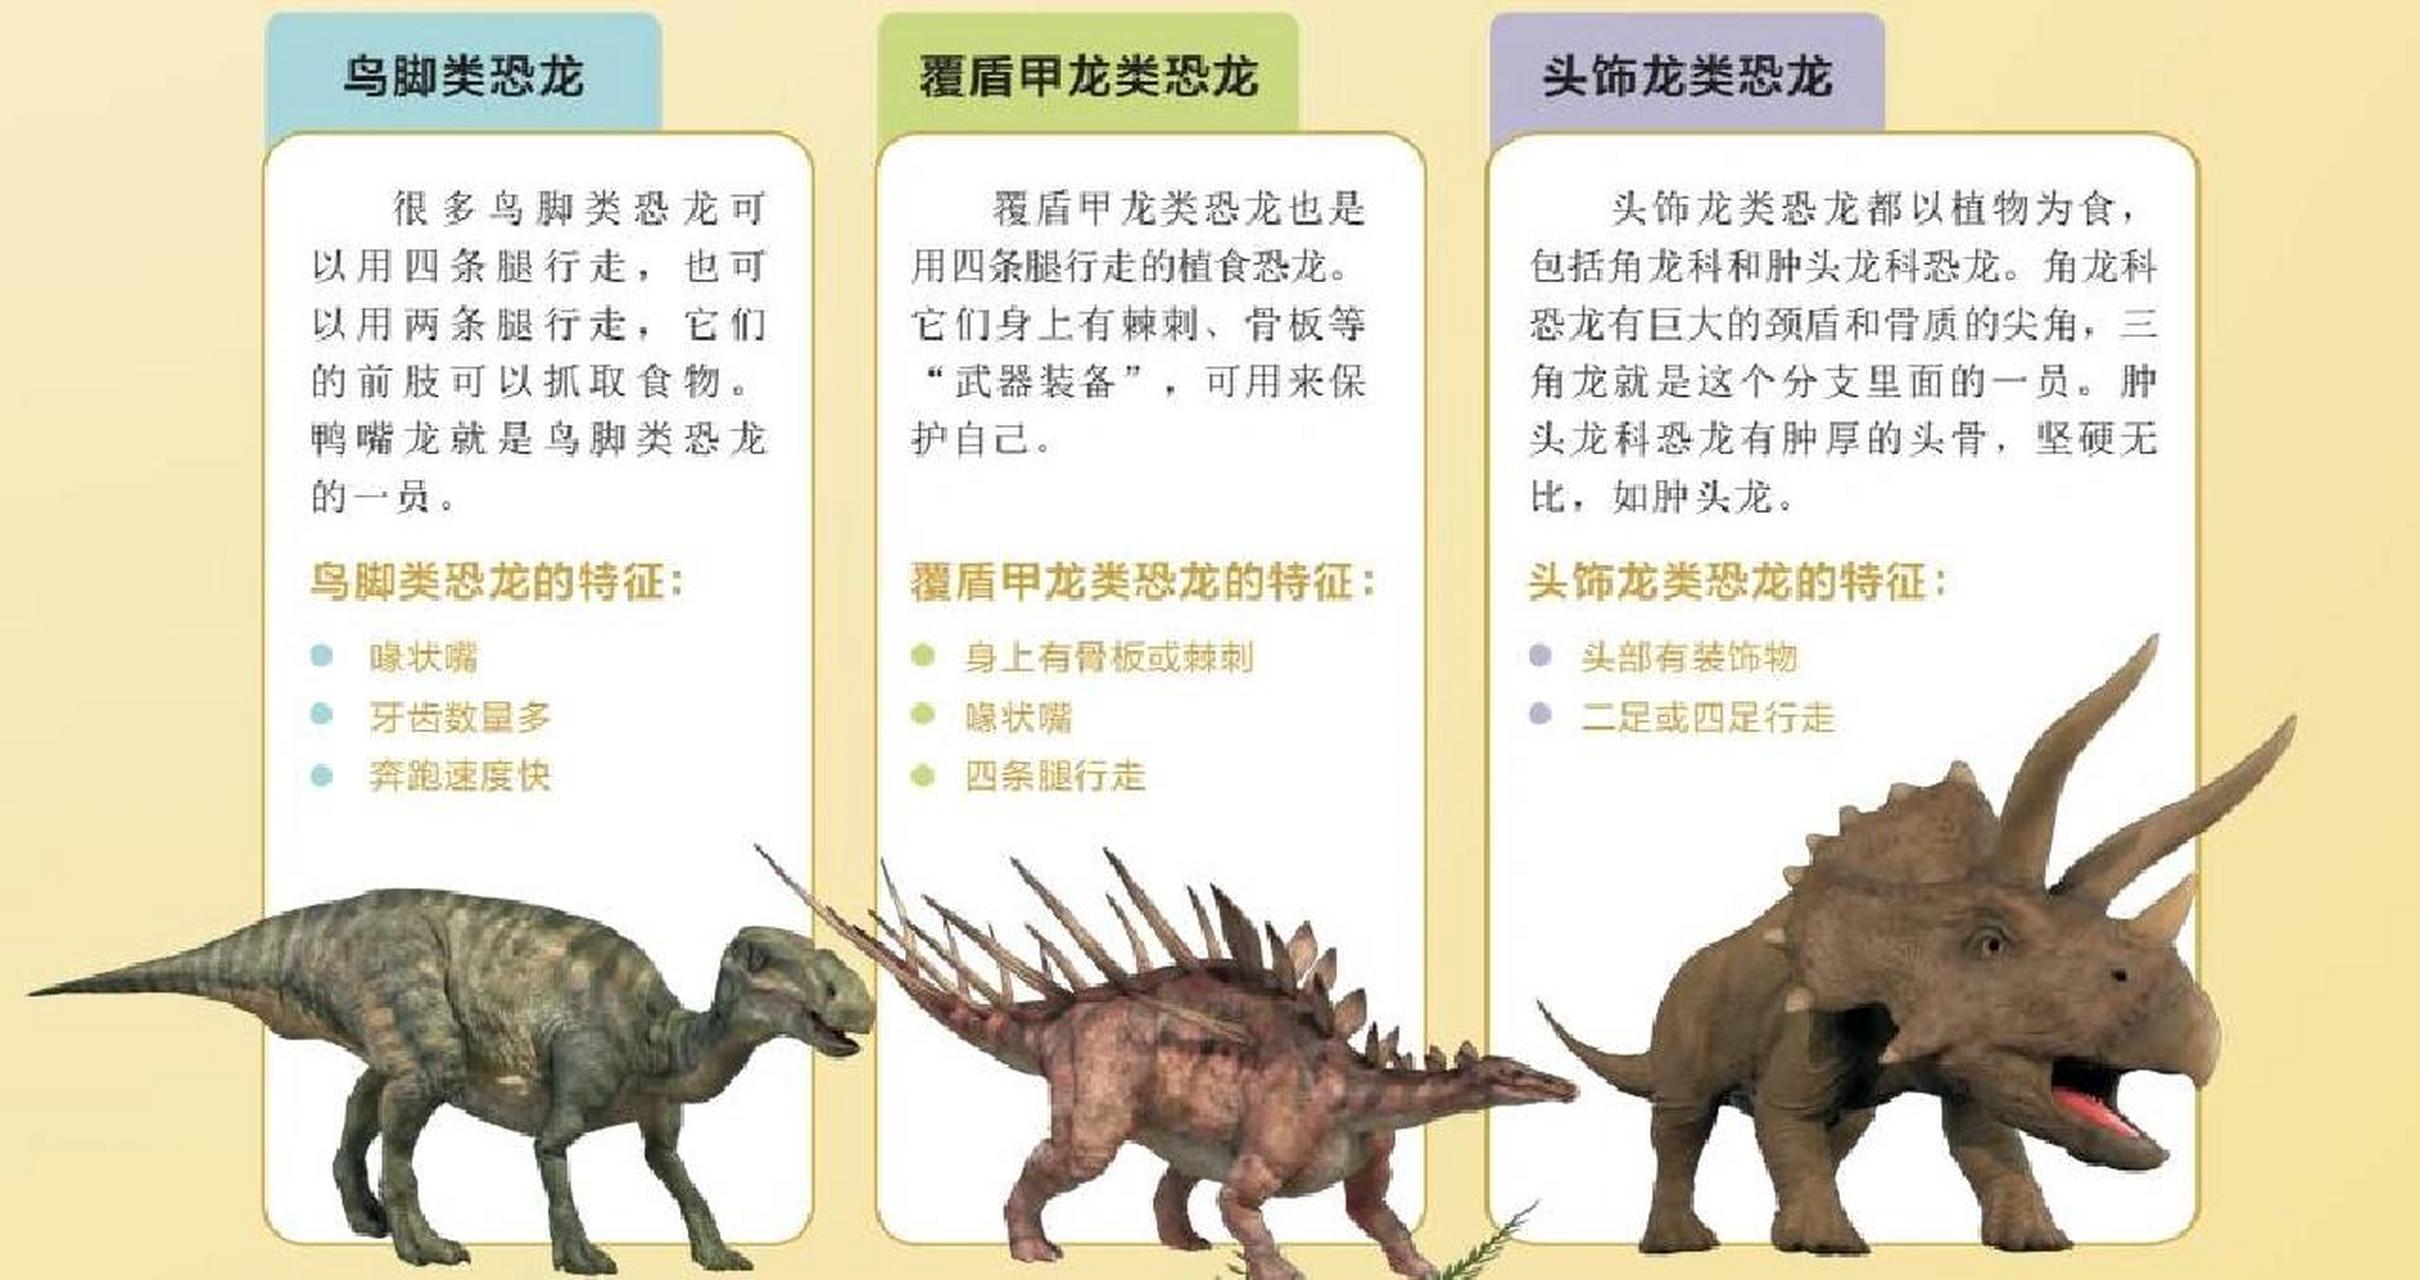 关于恐龙的资料图解图片